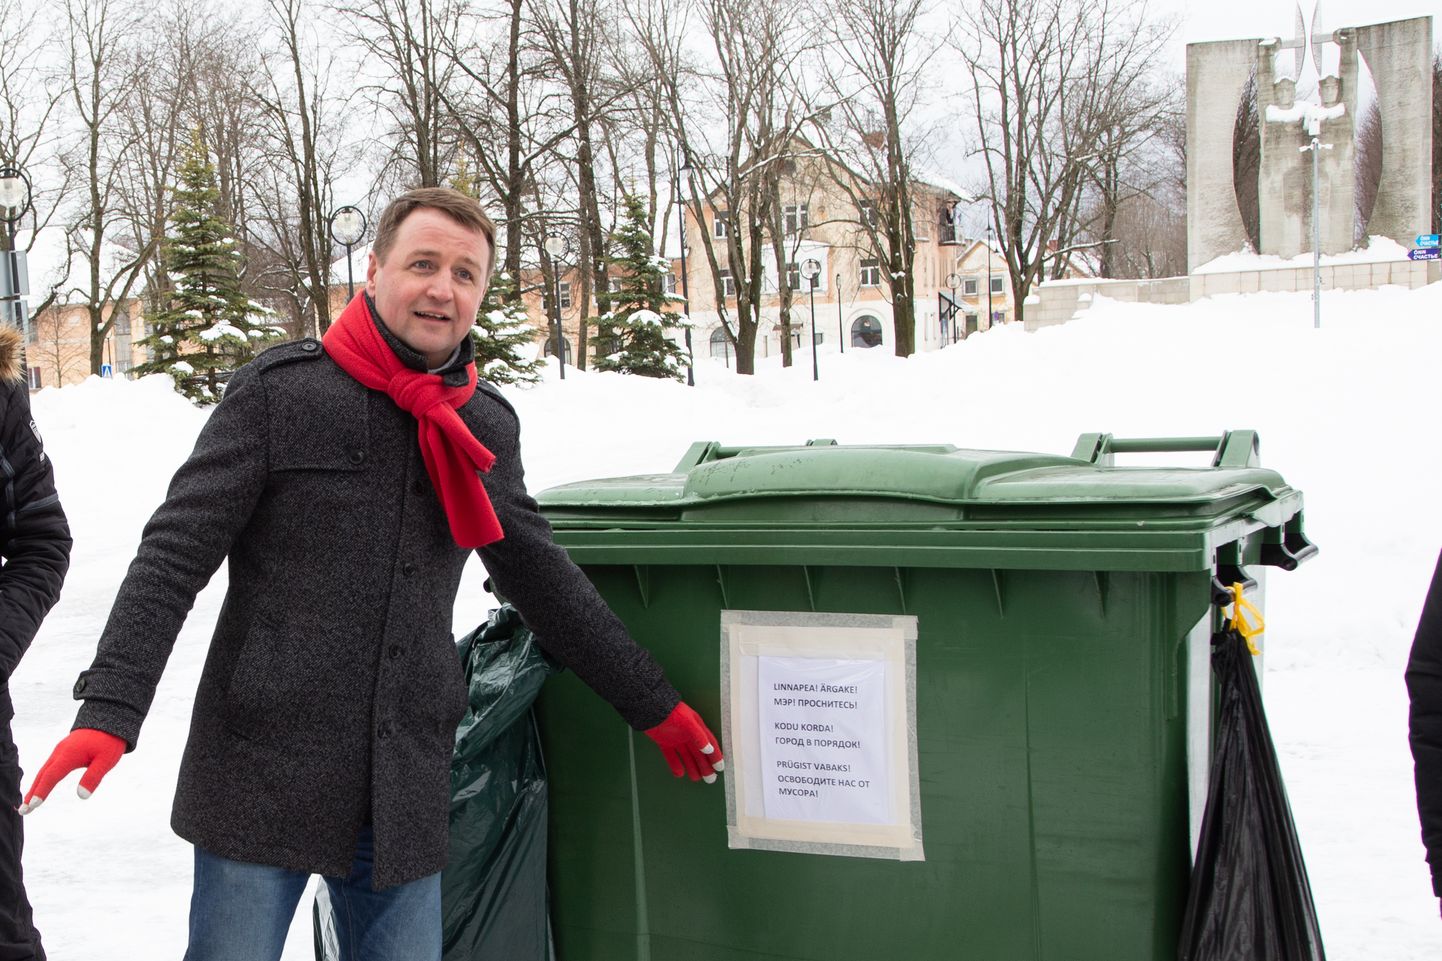 Минувшей зимой Эдуард Одинец вместе с другими соцдемами организовал демонстрацию перед зданием городской управы, протестуя против плохого содержания дорог и плохой организации вывоза мусора.